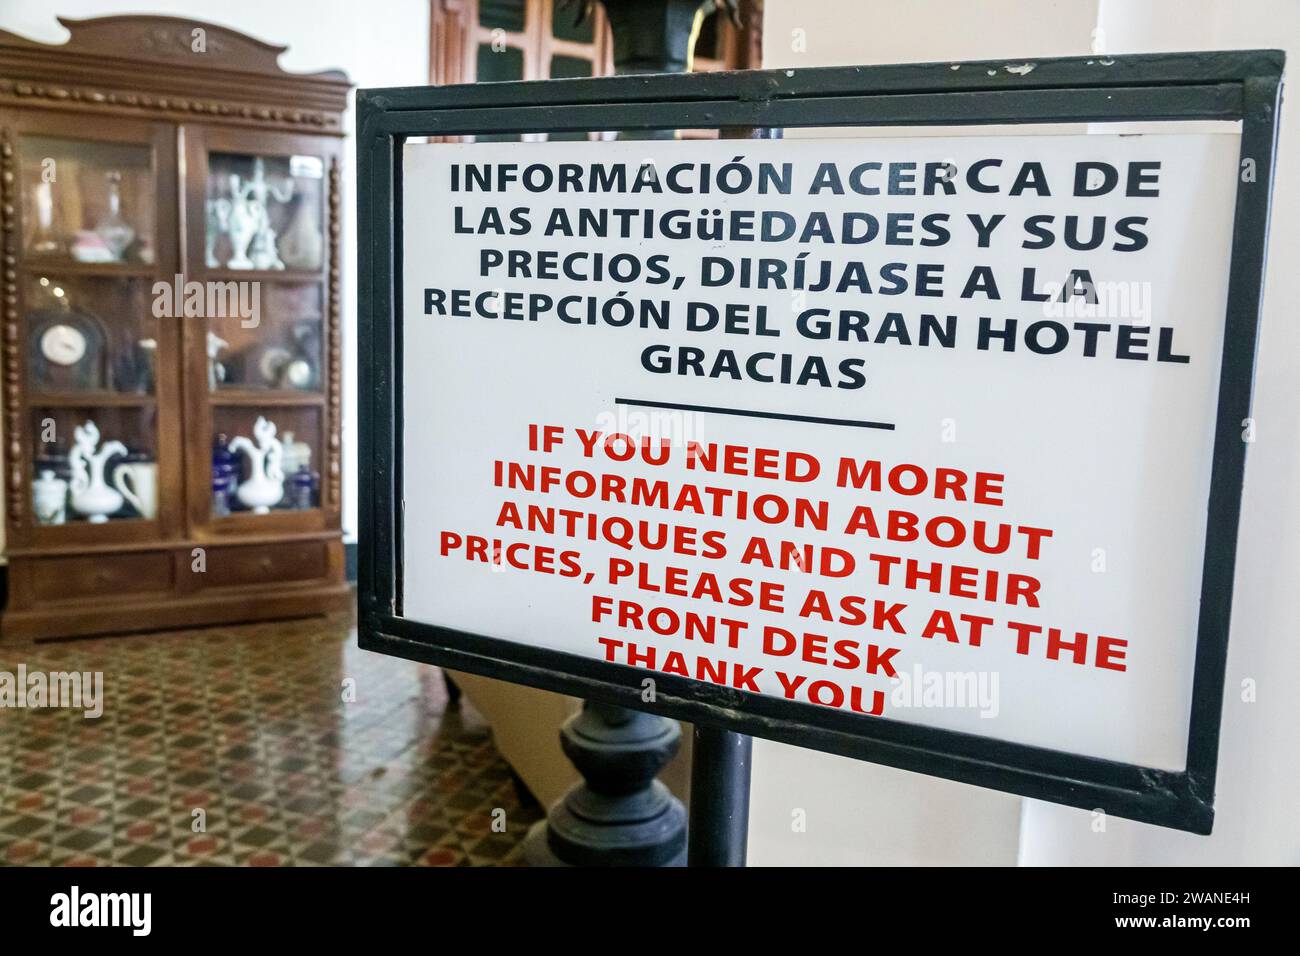 Merida Mexico, zentrales historisches Zentrum, Lobby des Gran Hotel de Merida, Inneneinrichtung, Hotel Lodging inn Motel Business, zwei 2 lan Stockfoto